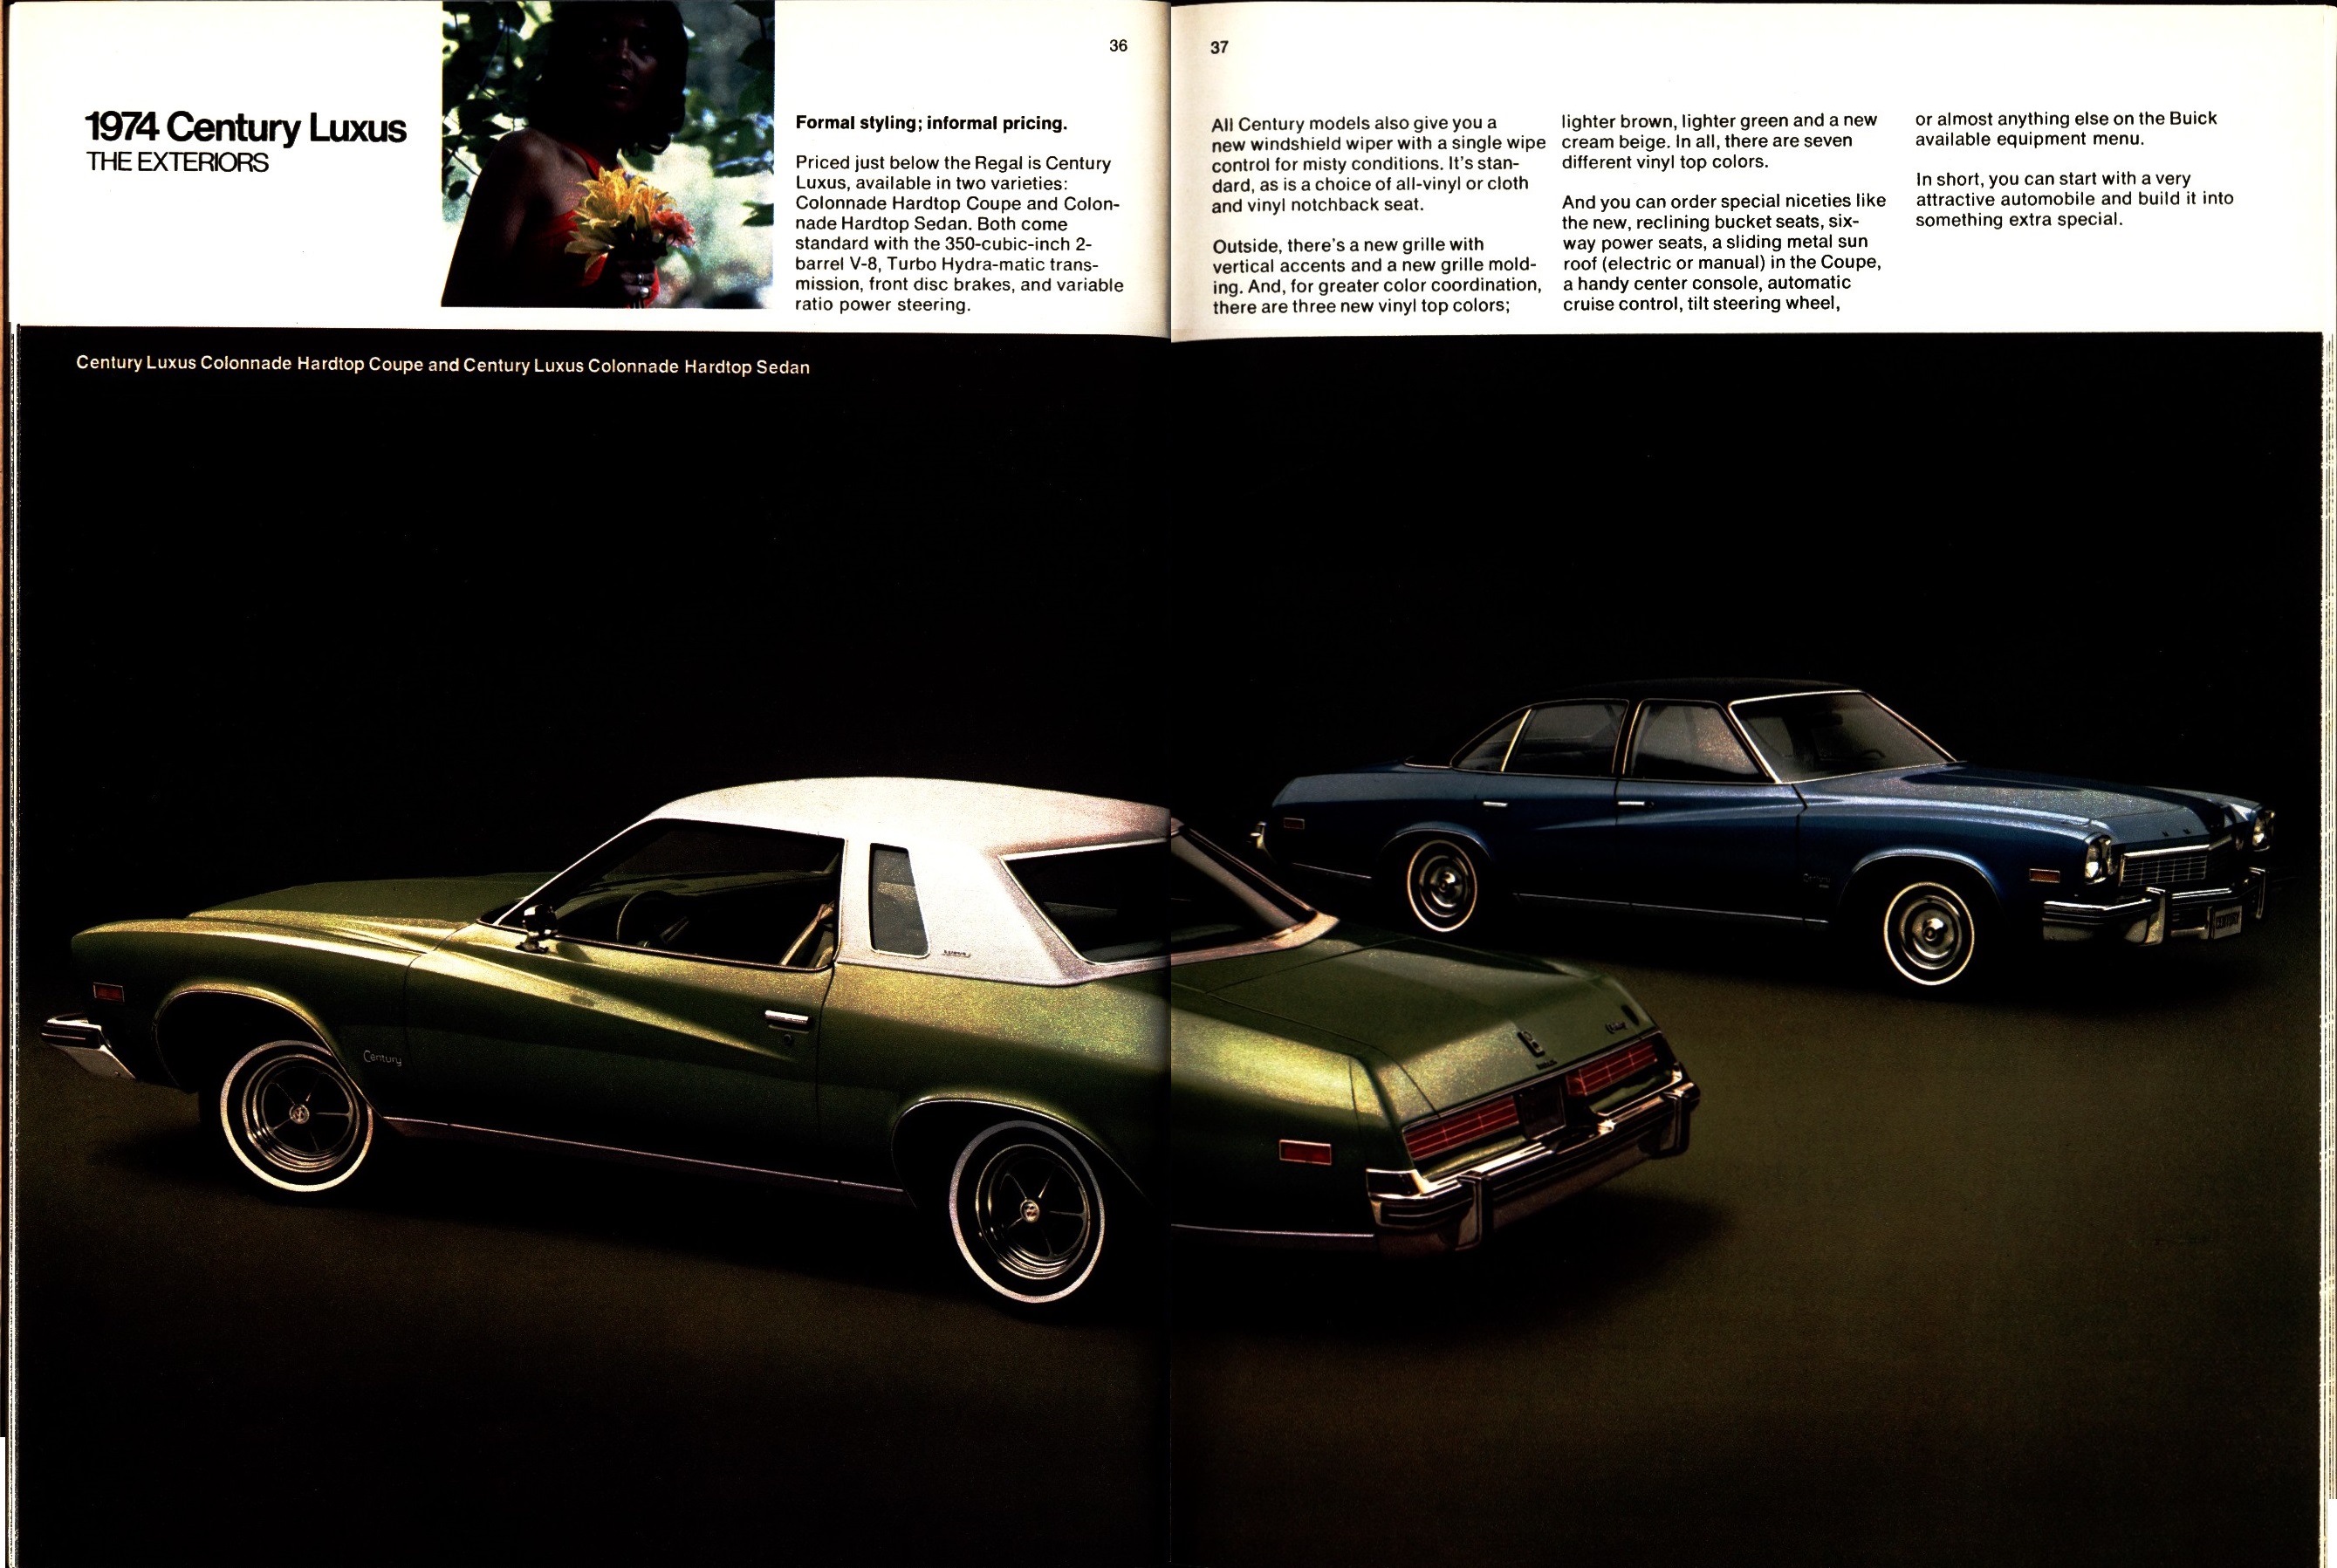 1974 Buick 36-37